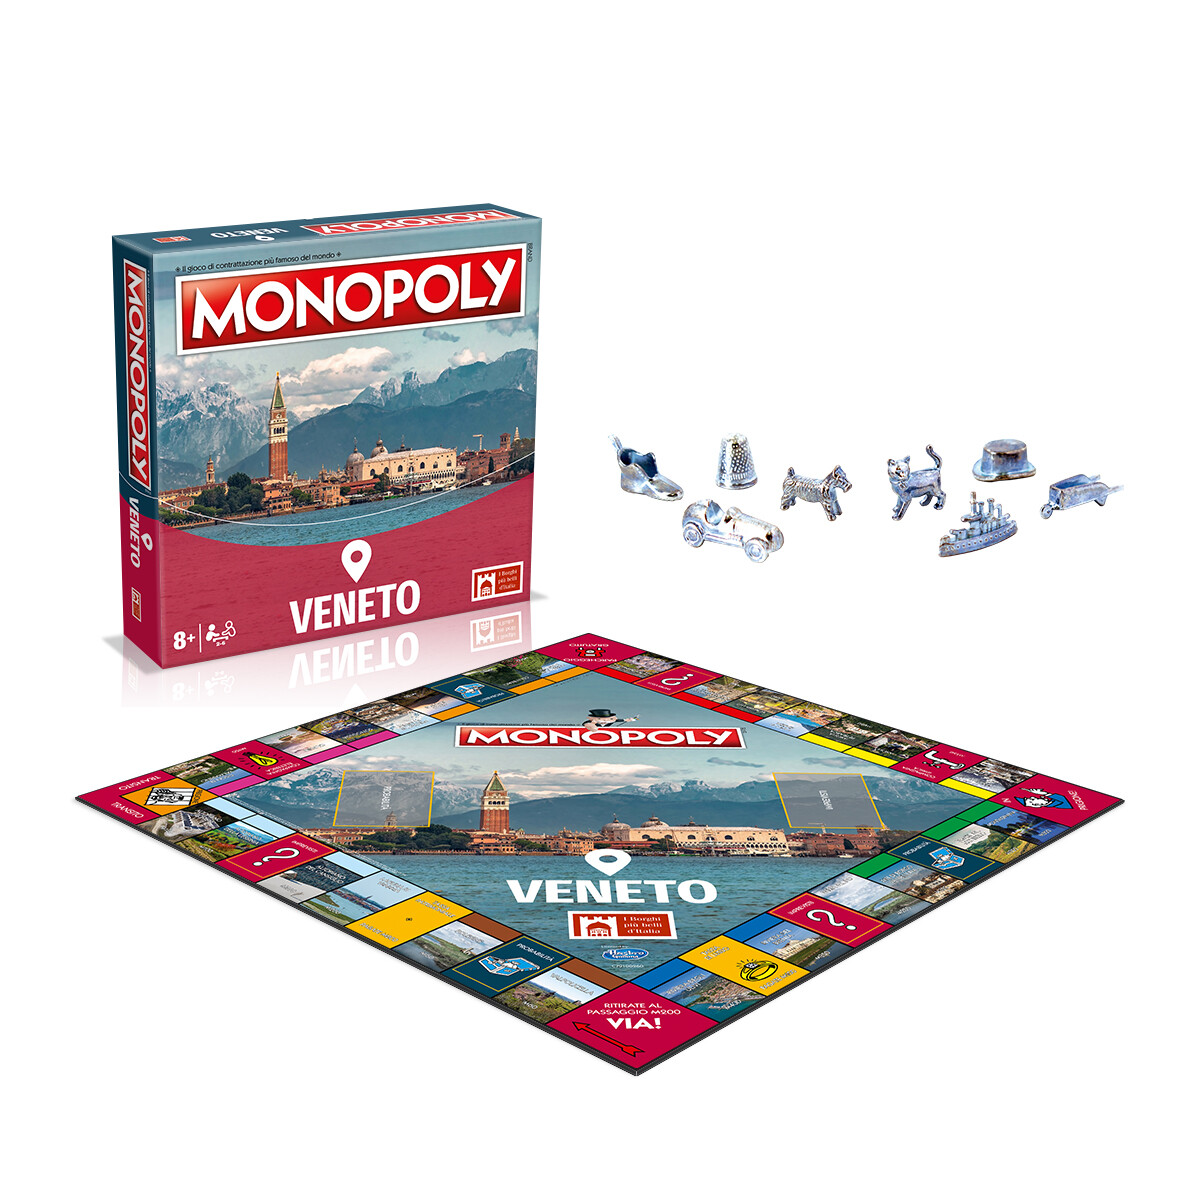 Monopoly - i borghi più belli d'italia - edizione veneto - MONOPOLY